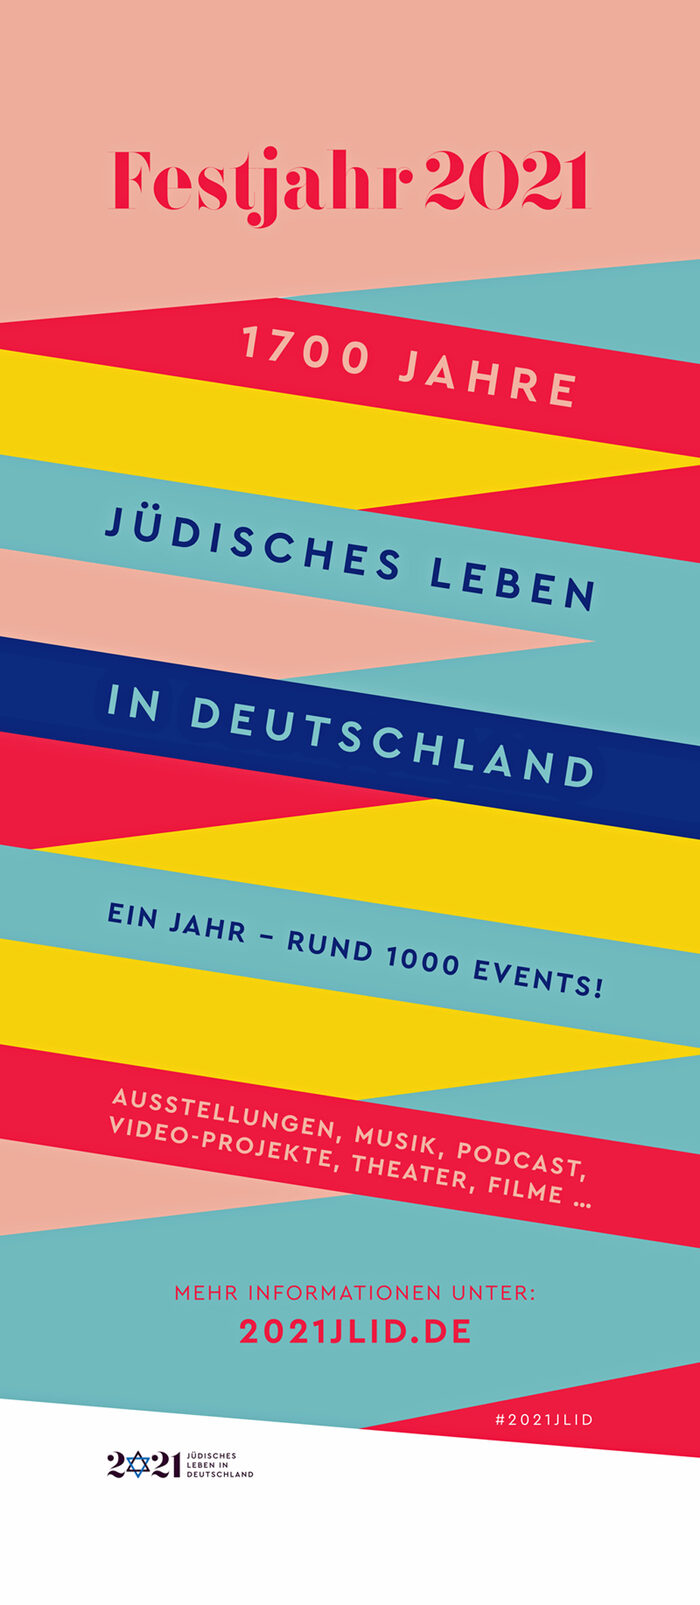 Flagge mit bunten Querstreifen mit dem Text zum Festjahr 2021 "1700 Jahre Jüdisches Leben in Deutschland"